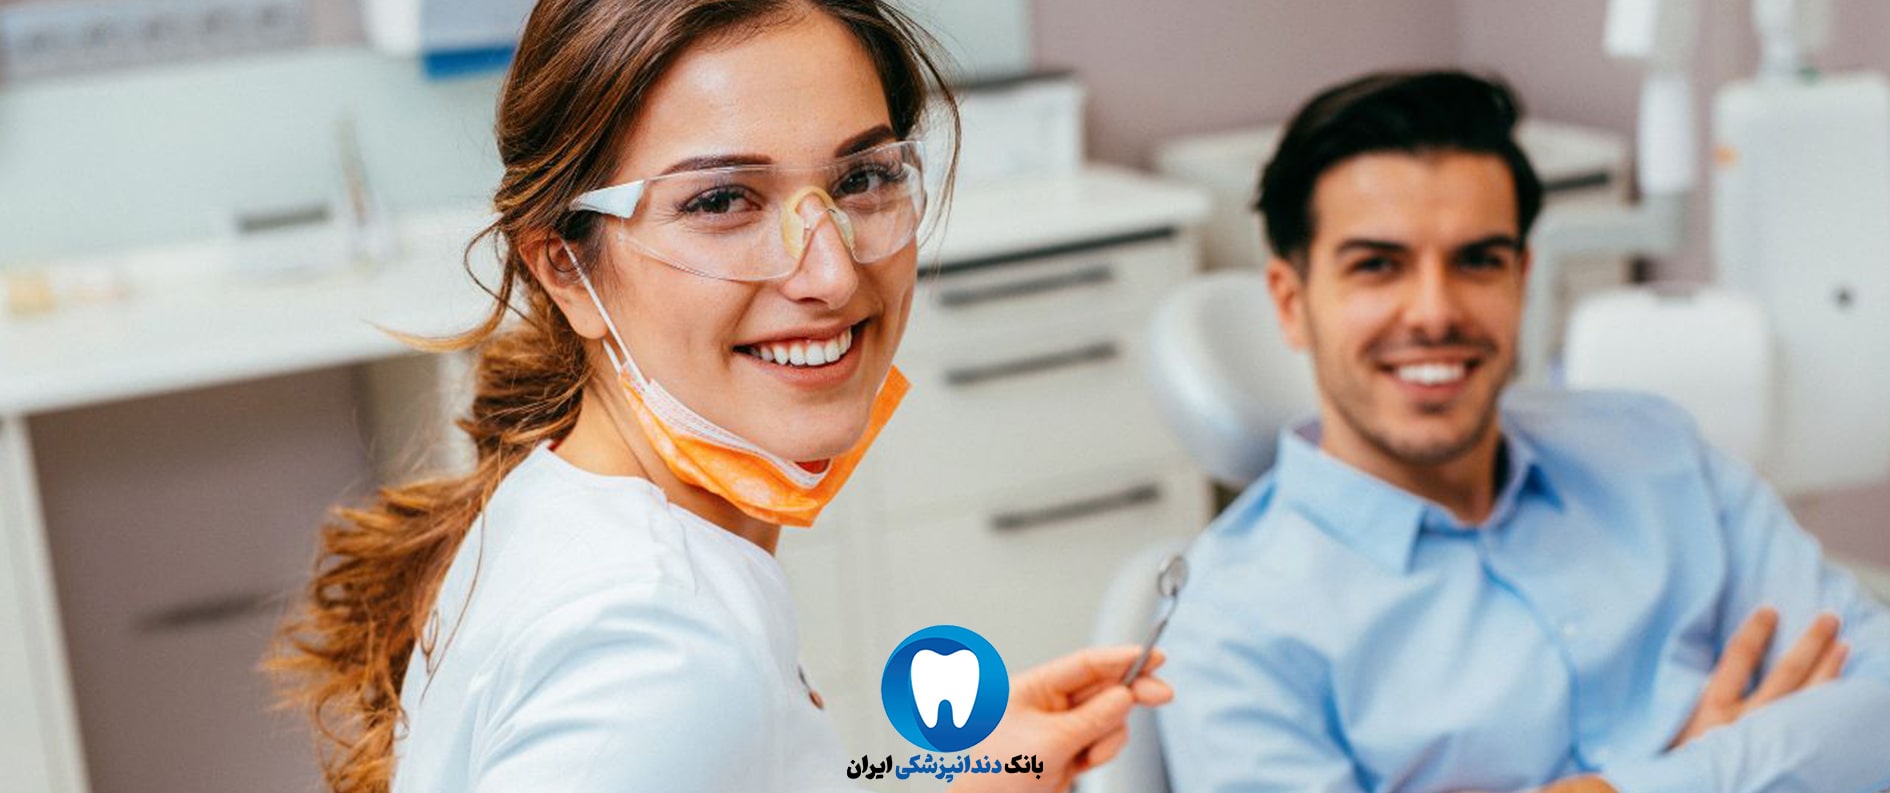 بهترین کلینیک تخصصی دندانپزشکی زیبایی در مشهد